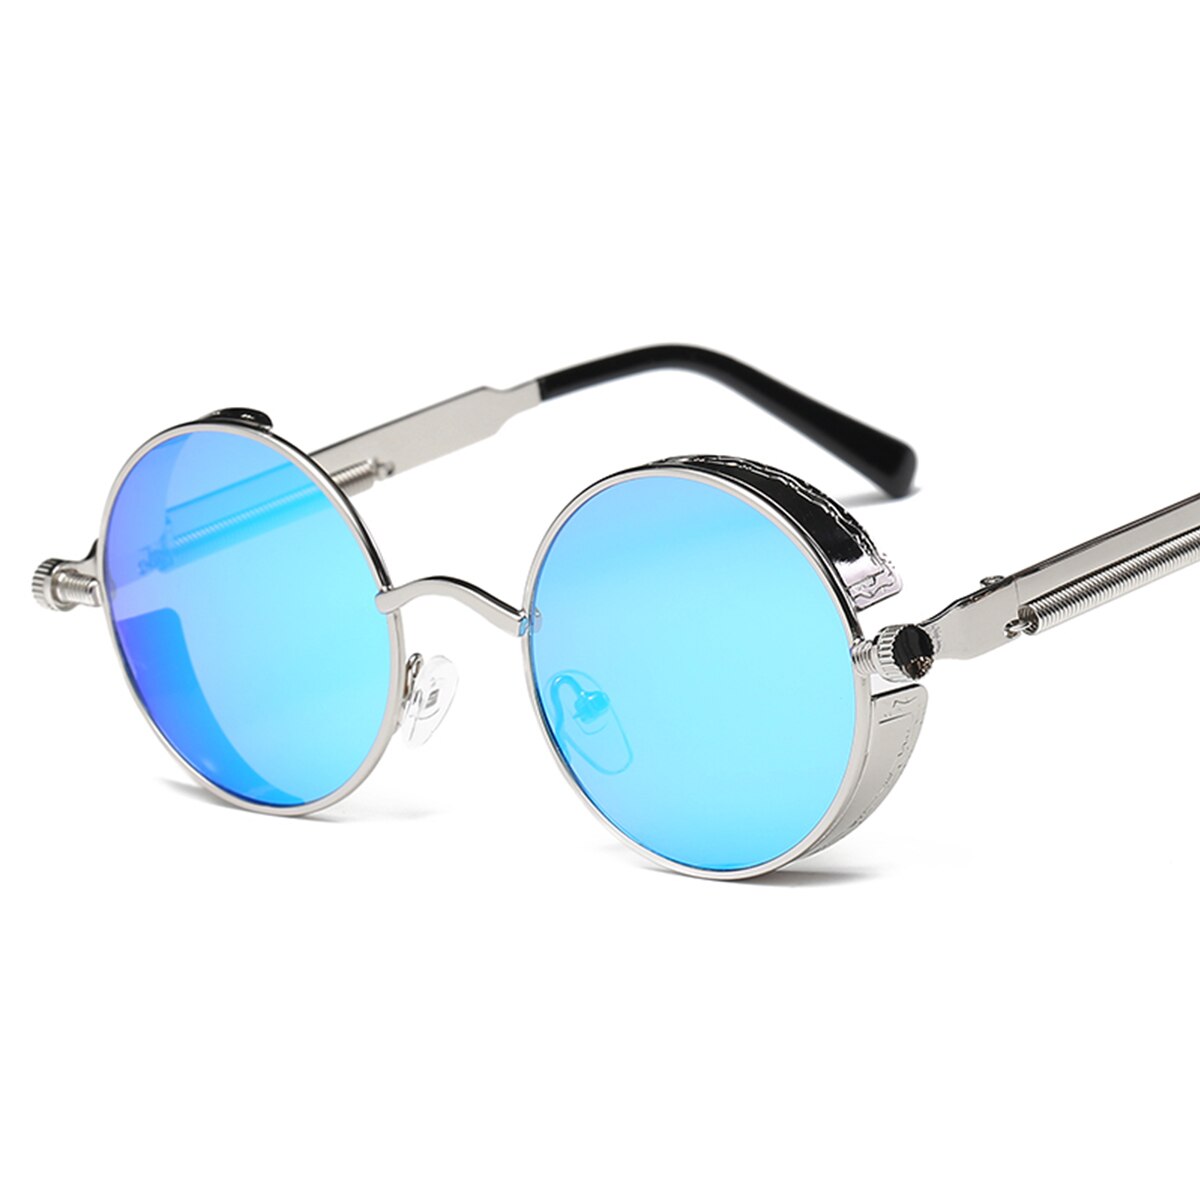 Retro steampunk stil vandrebriller rundt linse metalramme vintage briller mærke mandlige briller kørsel: Sølv-isblå linse